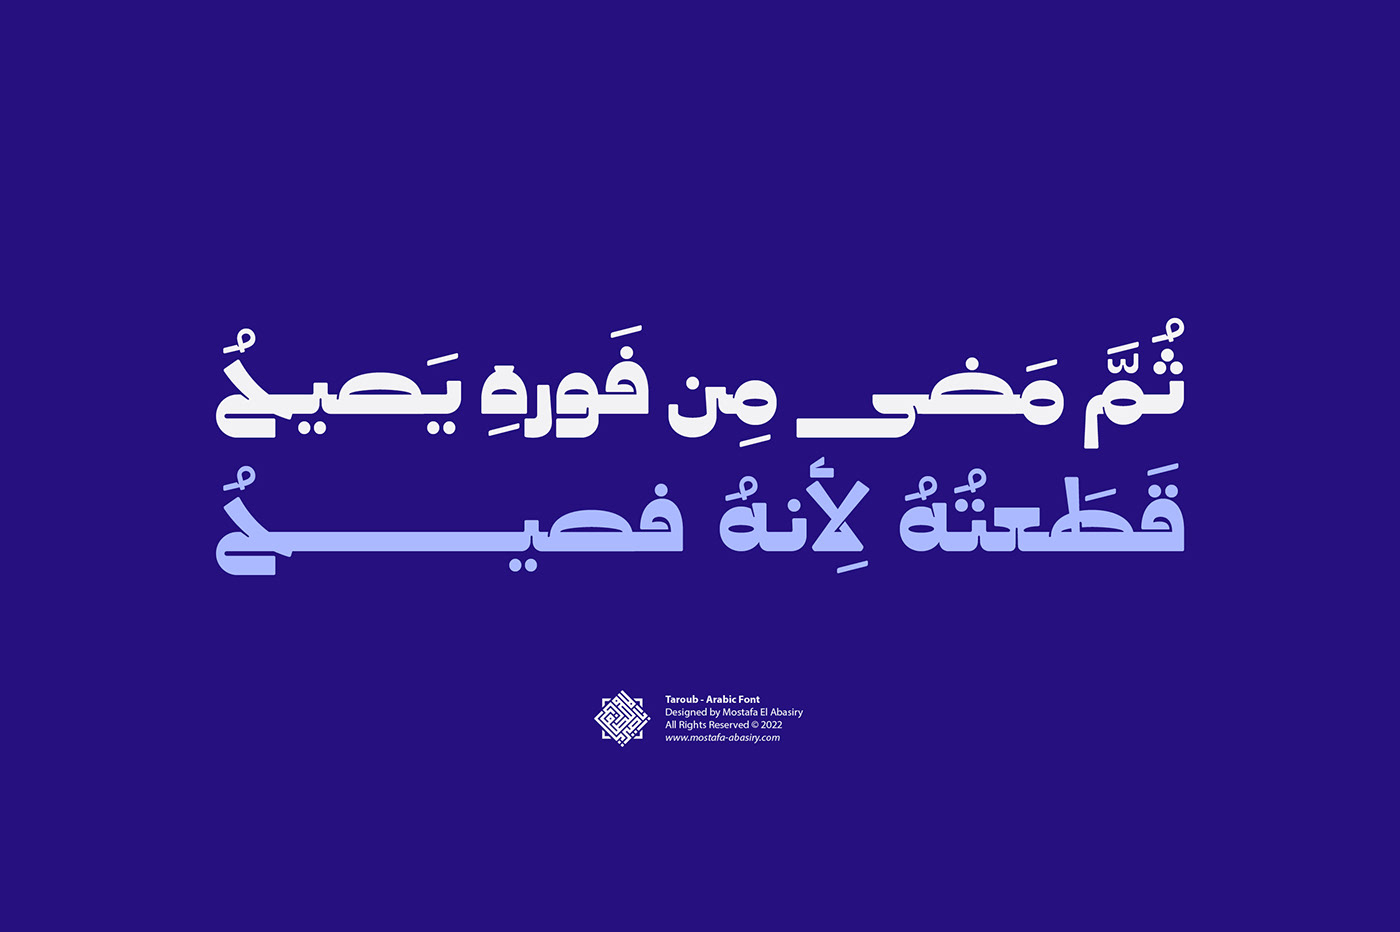 arabic font islamicart Typeface تايبوجرافي تايبوغرافي خط عربي